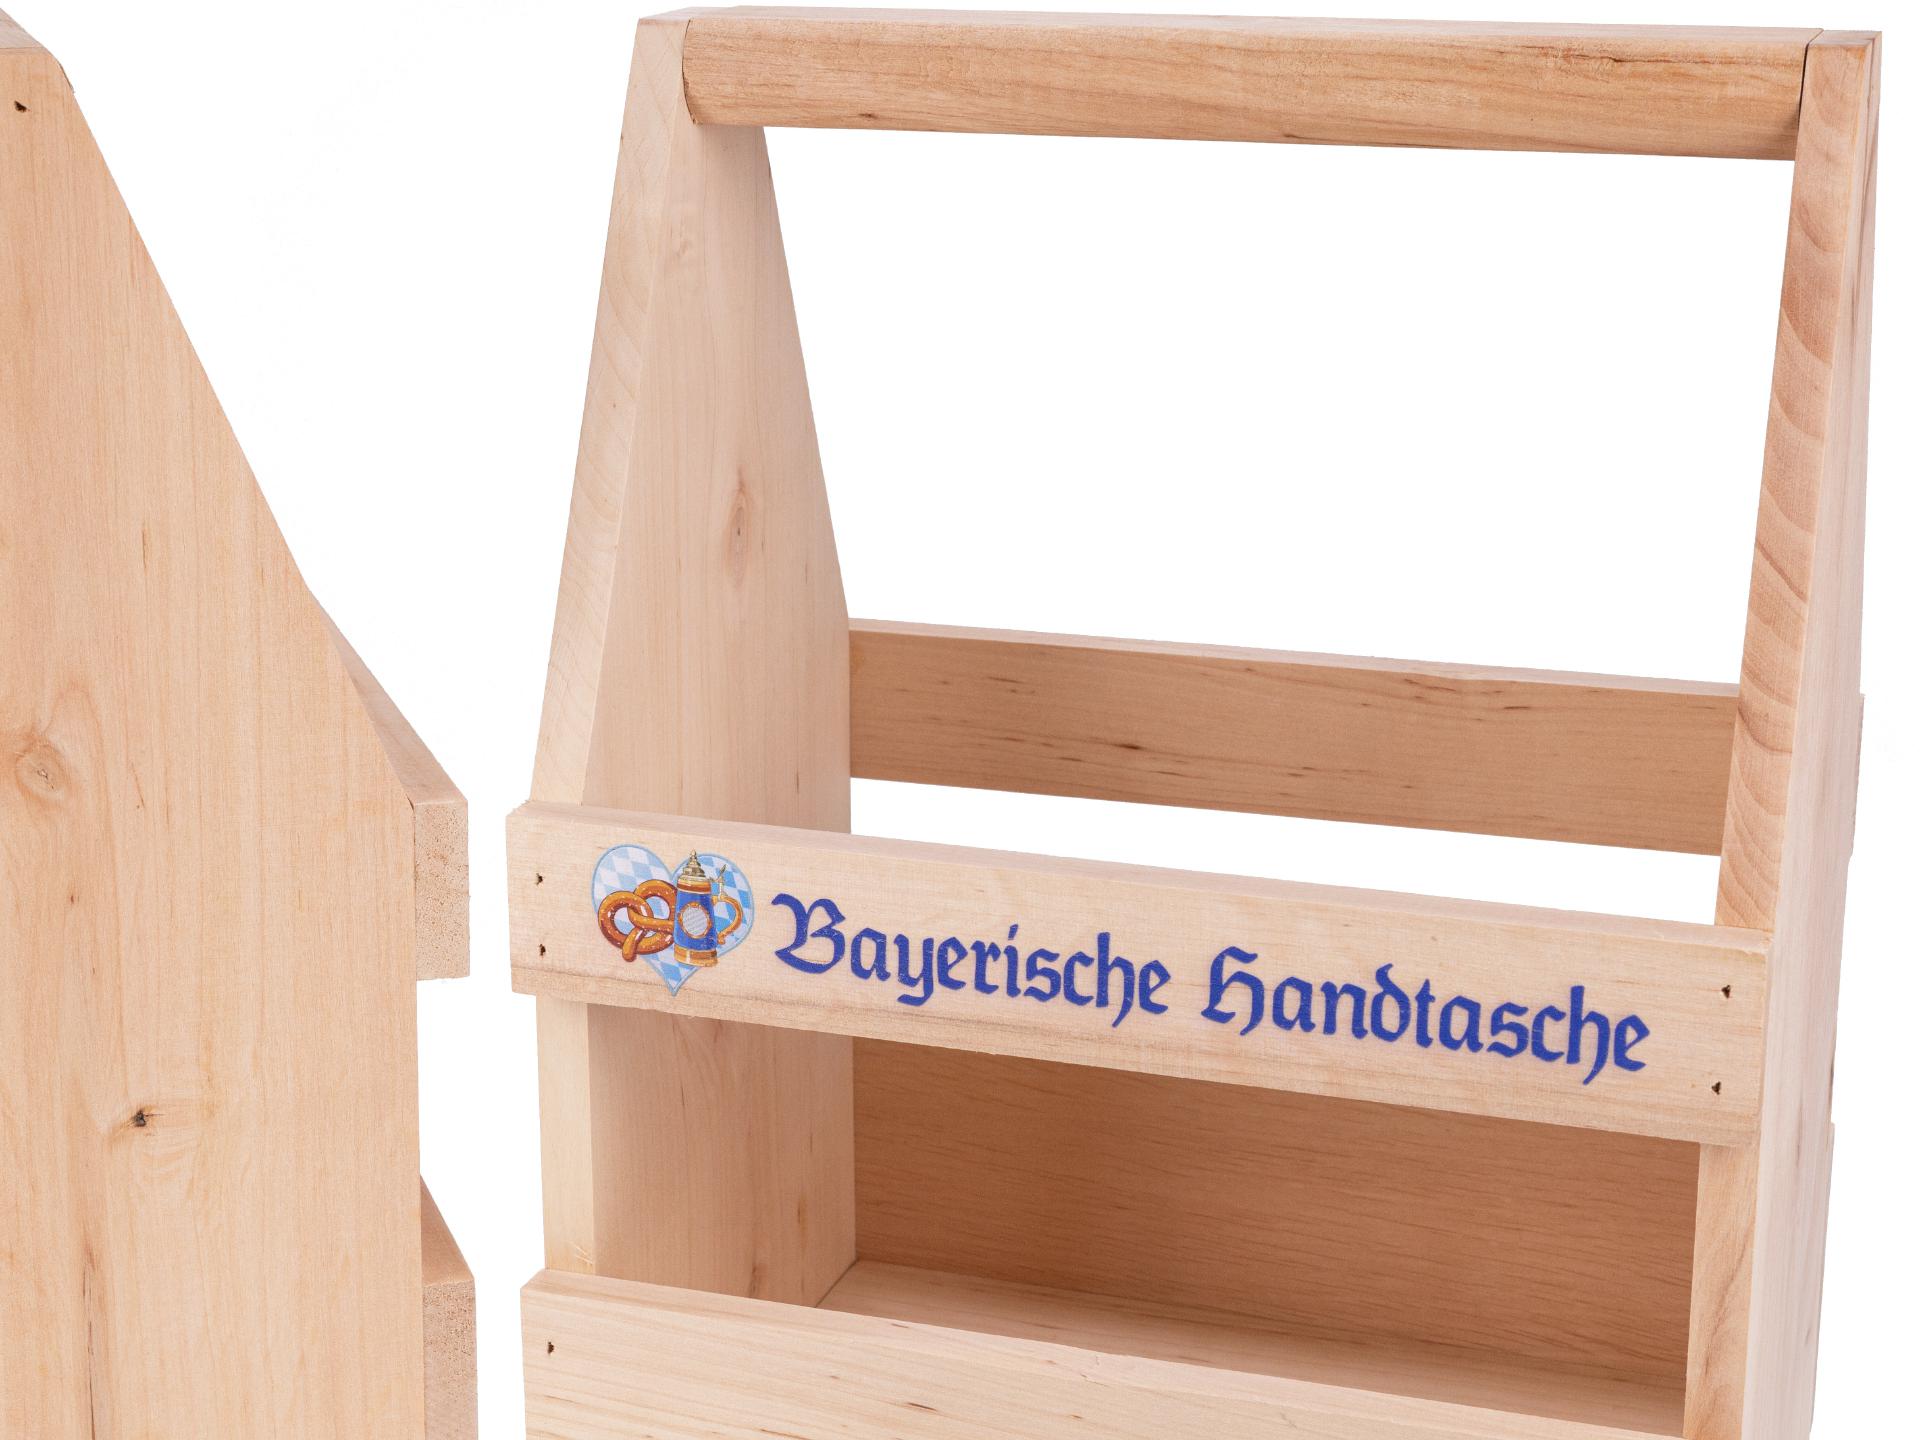 Holz Biertraeger aus Erle mit Bunt Druck: Bayerische Handtasche